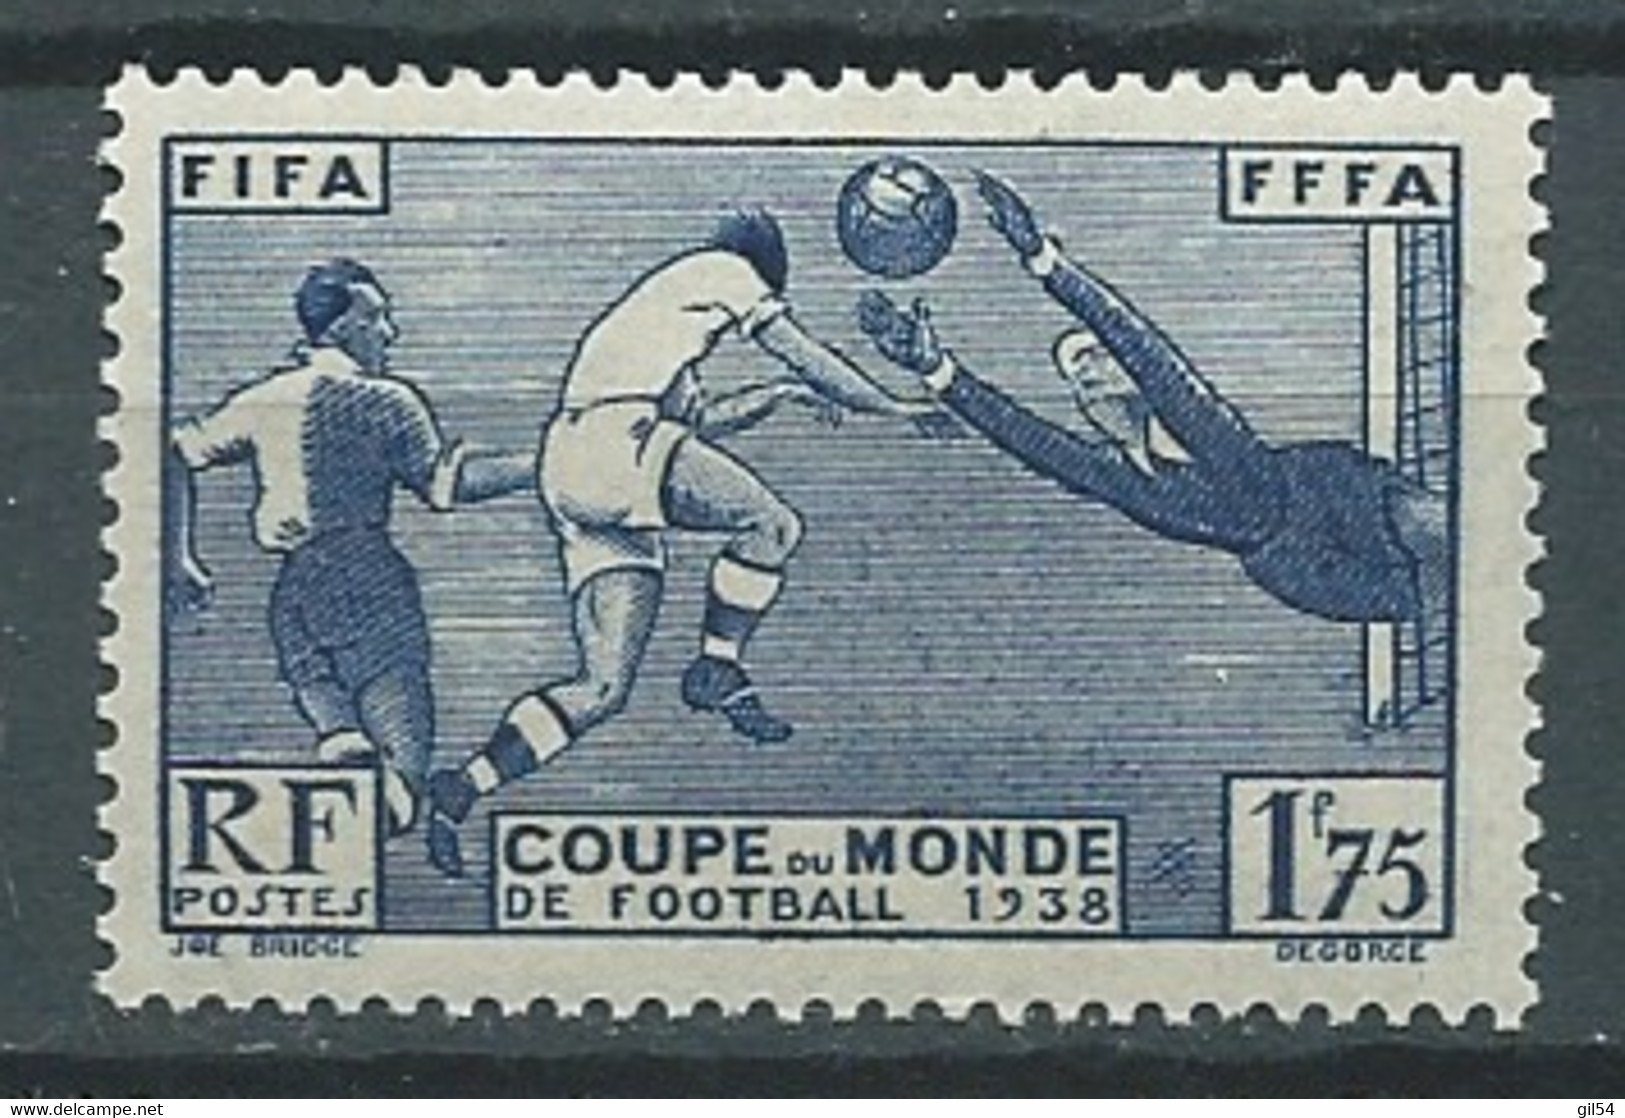 France  Yvert N°  396 *  1 Valeur Neuves Avec  Trace De Charnière  - Pal 5326 - Unused Stamps